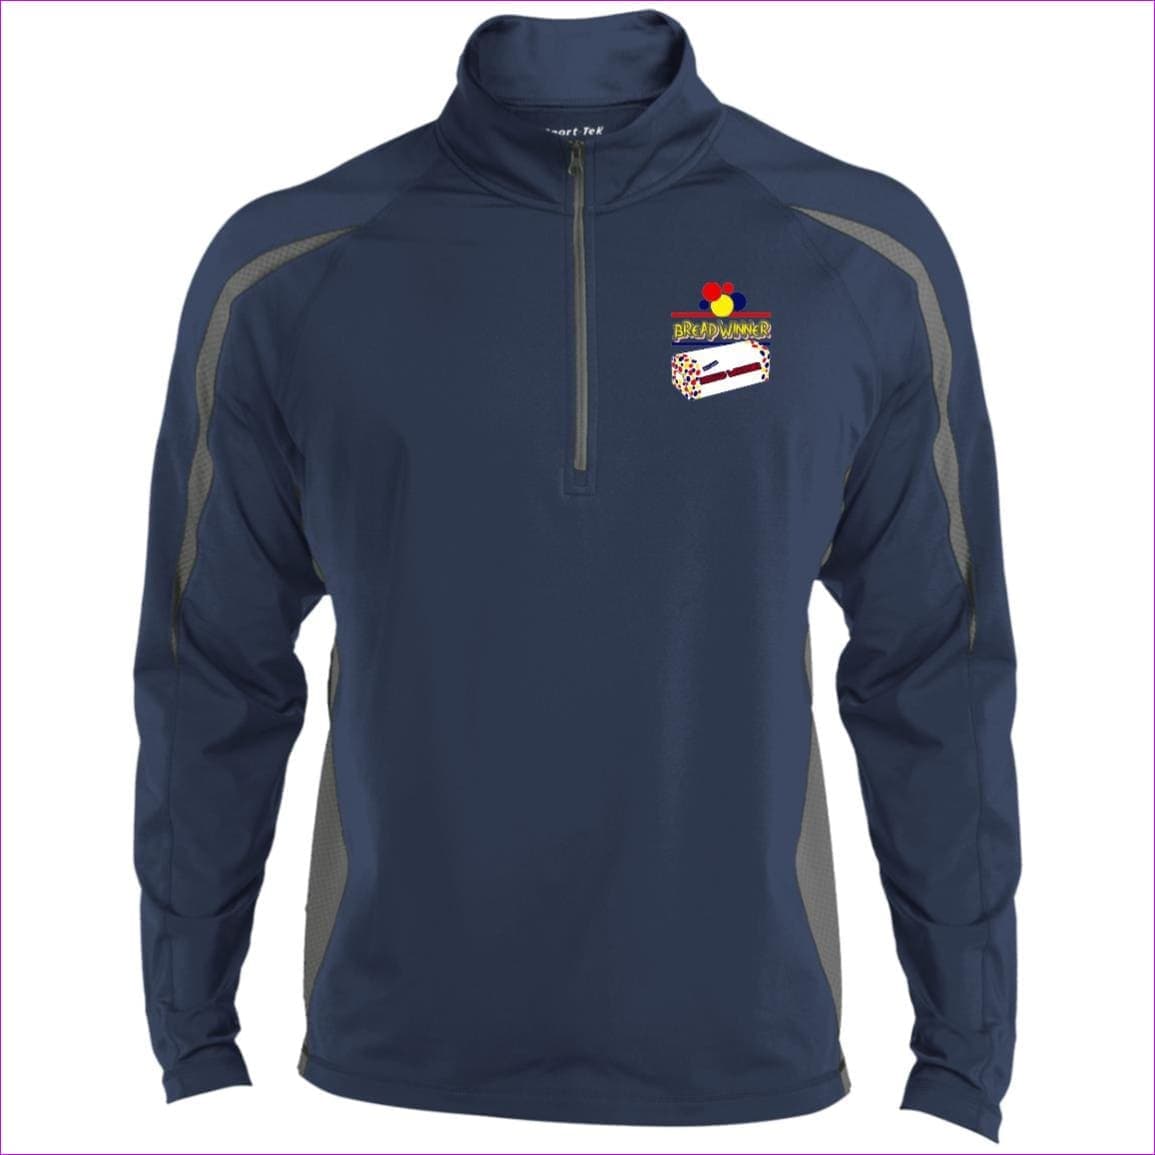 True Navy Charcoal Grey - Bread Winner Men's Sport Wicking Colorblock 1/2 Zip Sweatshirt - mens sweatshirt at TFC&H Co.